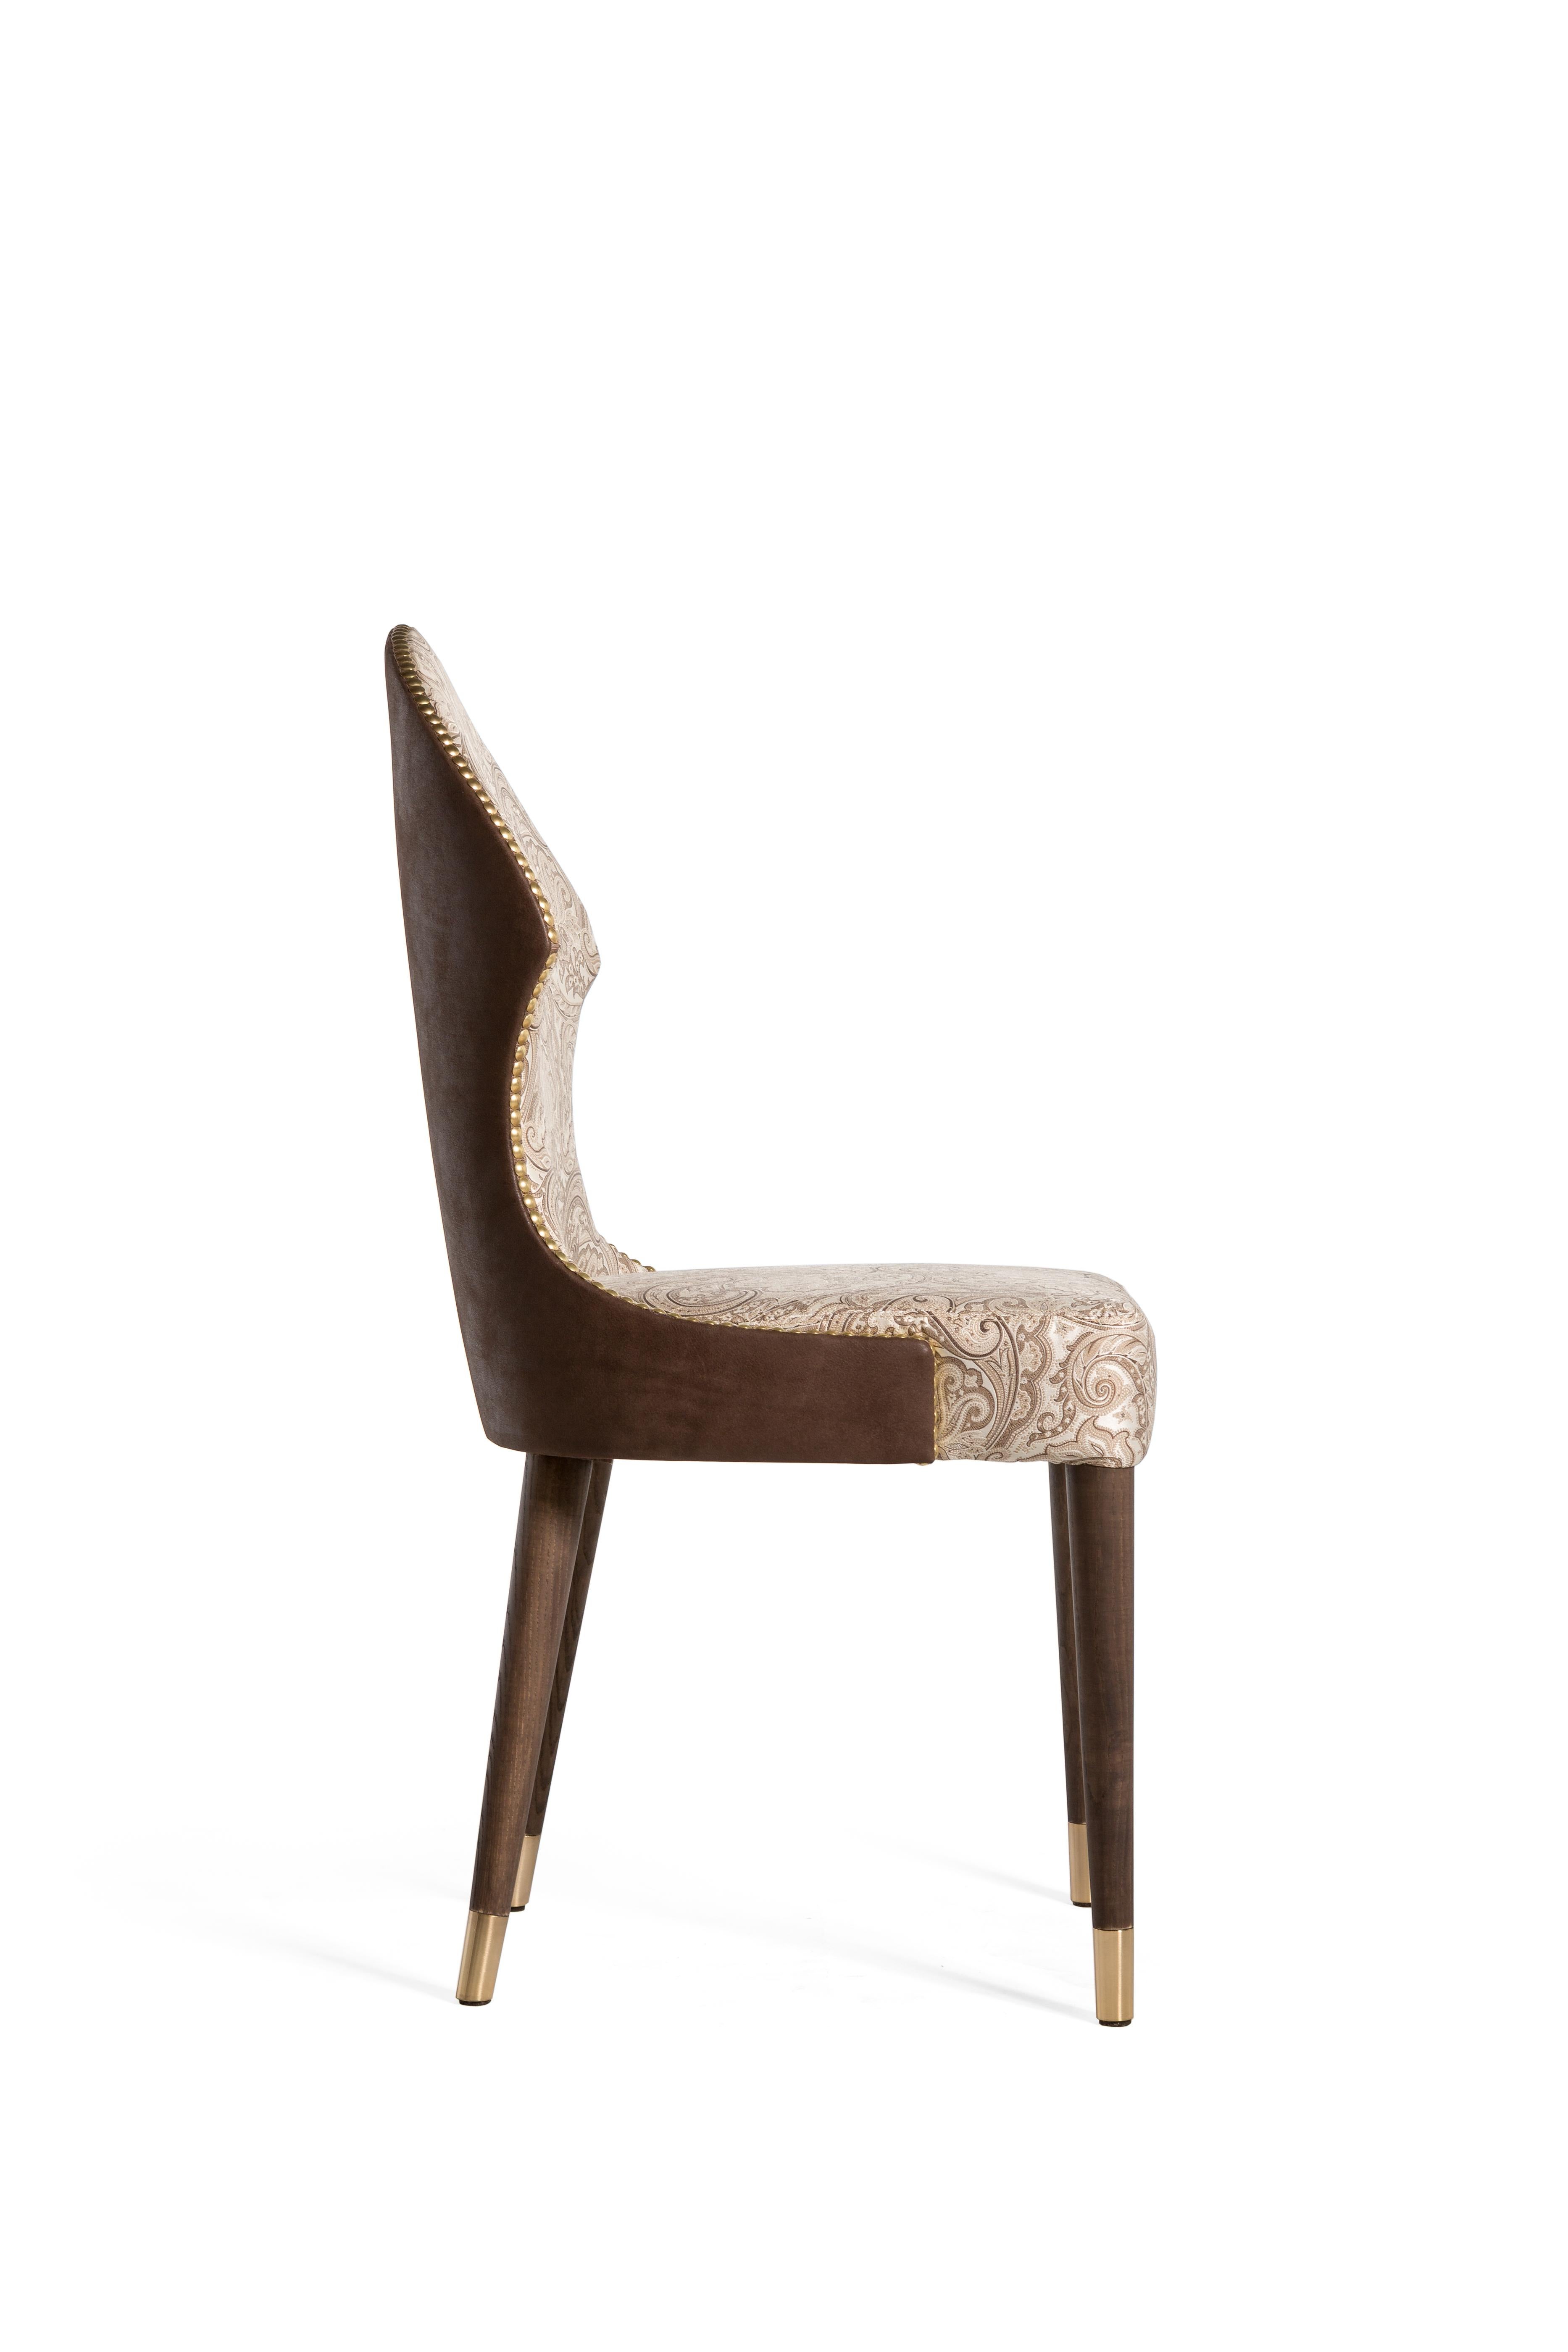 Der „Glam Chair“ gehört zur Subliminal Belloni Kollektion,
Er ist vollständig mit einer Struktur aus Eschenholz bedeckt.
Die Füße aus hellgoldfarbenem, gebürstetem Messing sind auch in verchromter Ausführung erhältlich.
Sitz und Rückenlehne mit